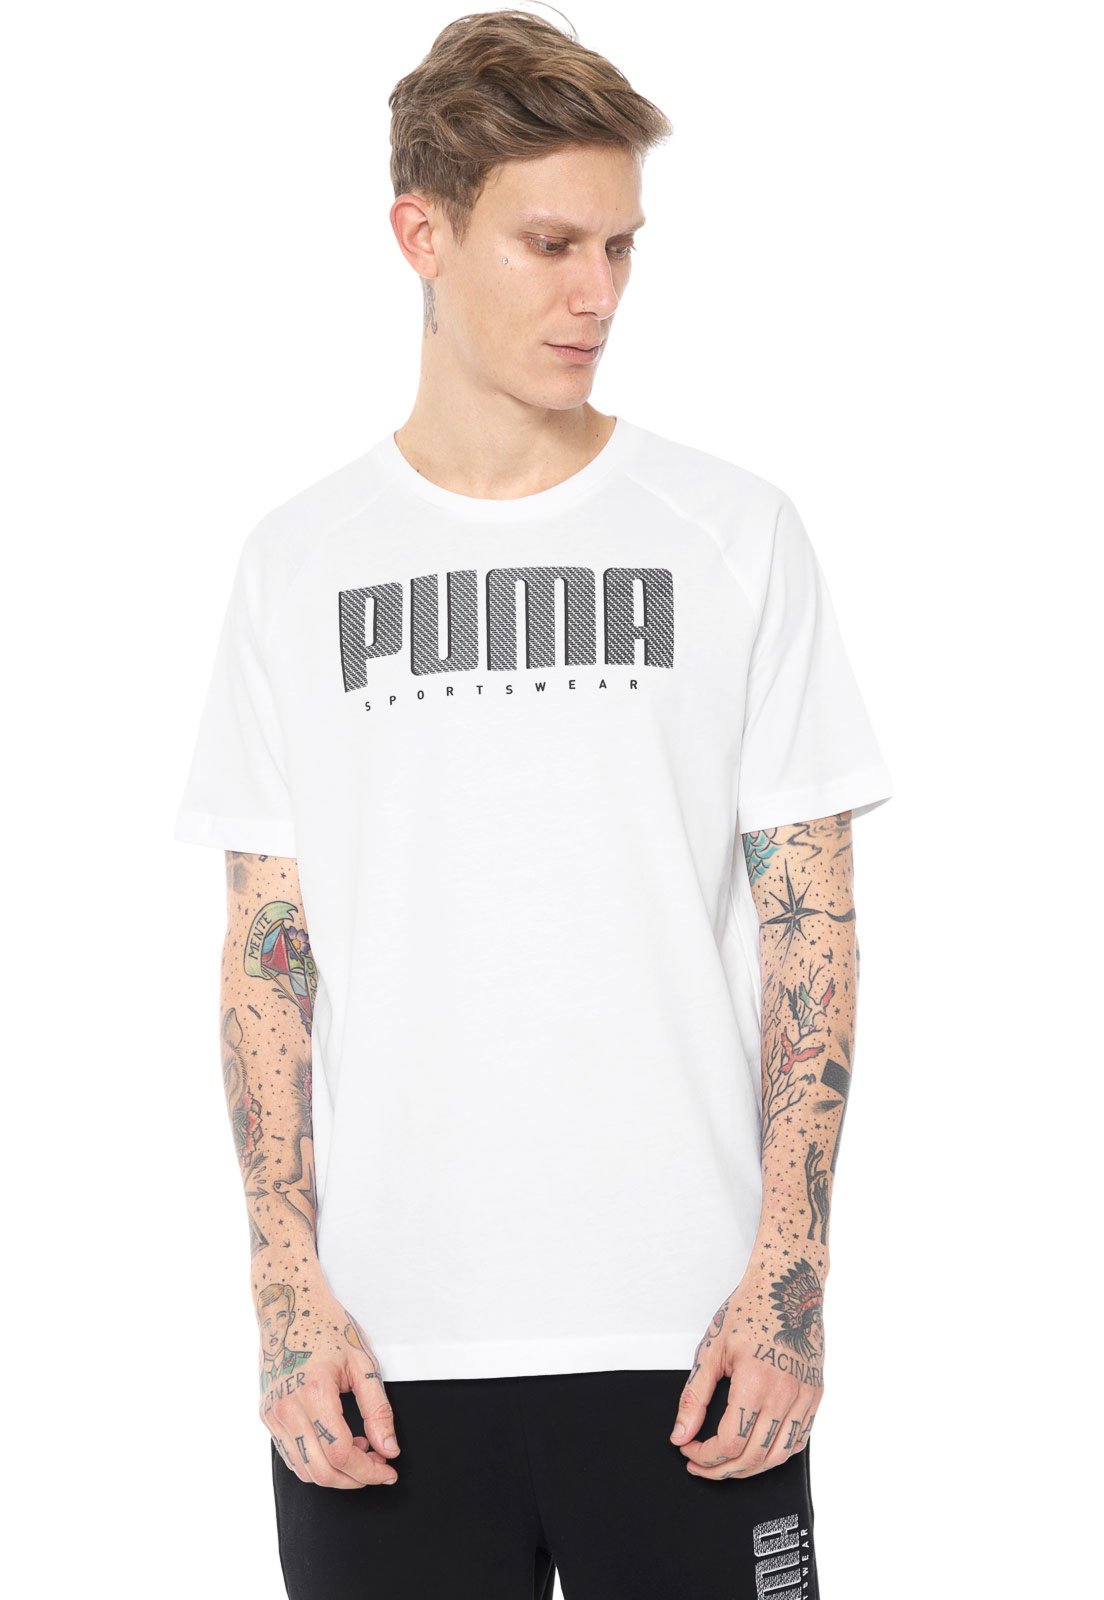 Camiseta Puma Athletics Compre Agora Kanui